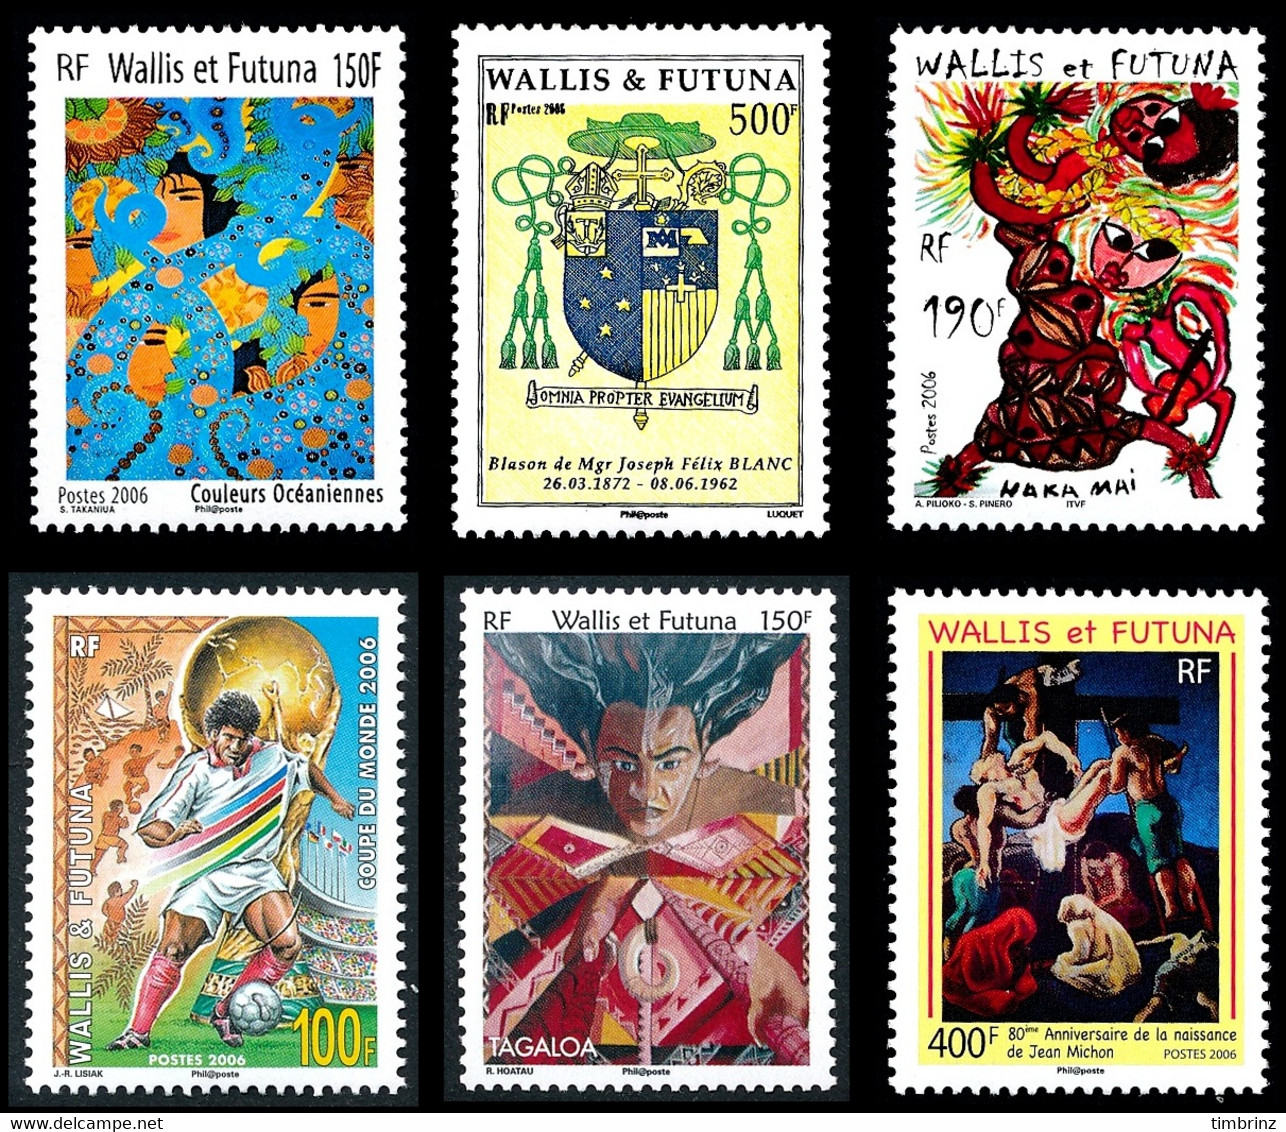 WALLIS ET FUTUNA Année complète 2006 + BF - Yv. 651 à 671 + BF 21 ** MNH - 22 timbres  ..Réf.W&F23100